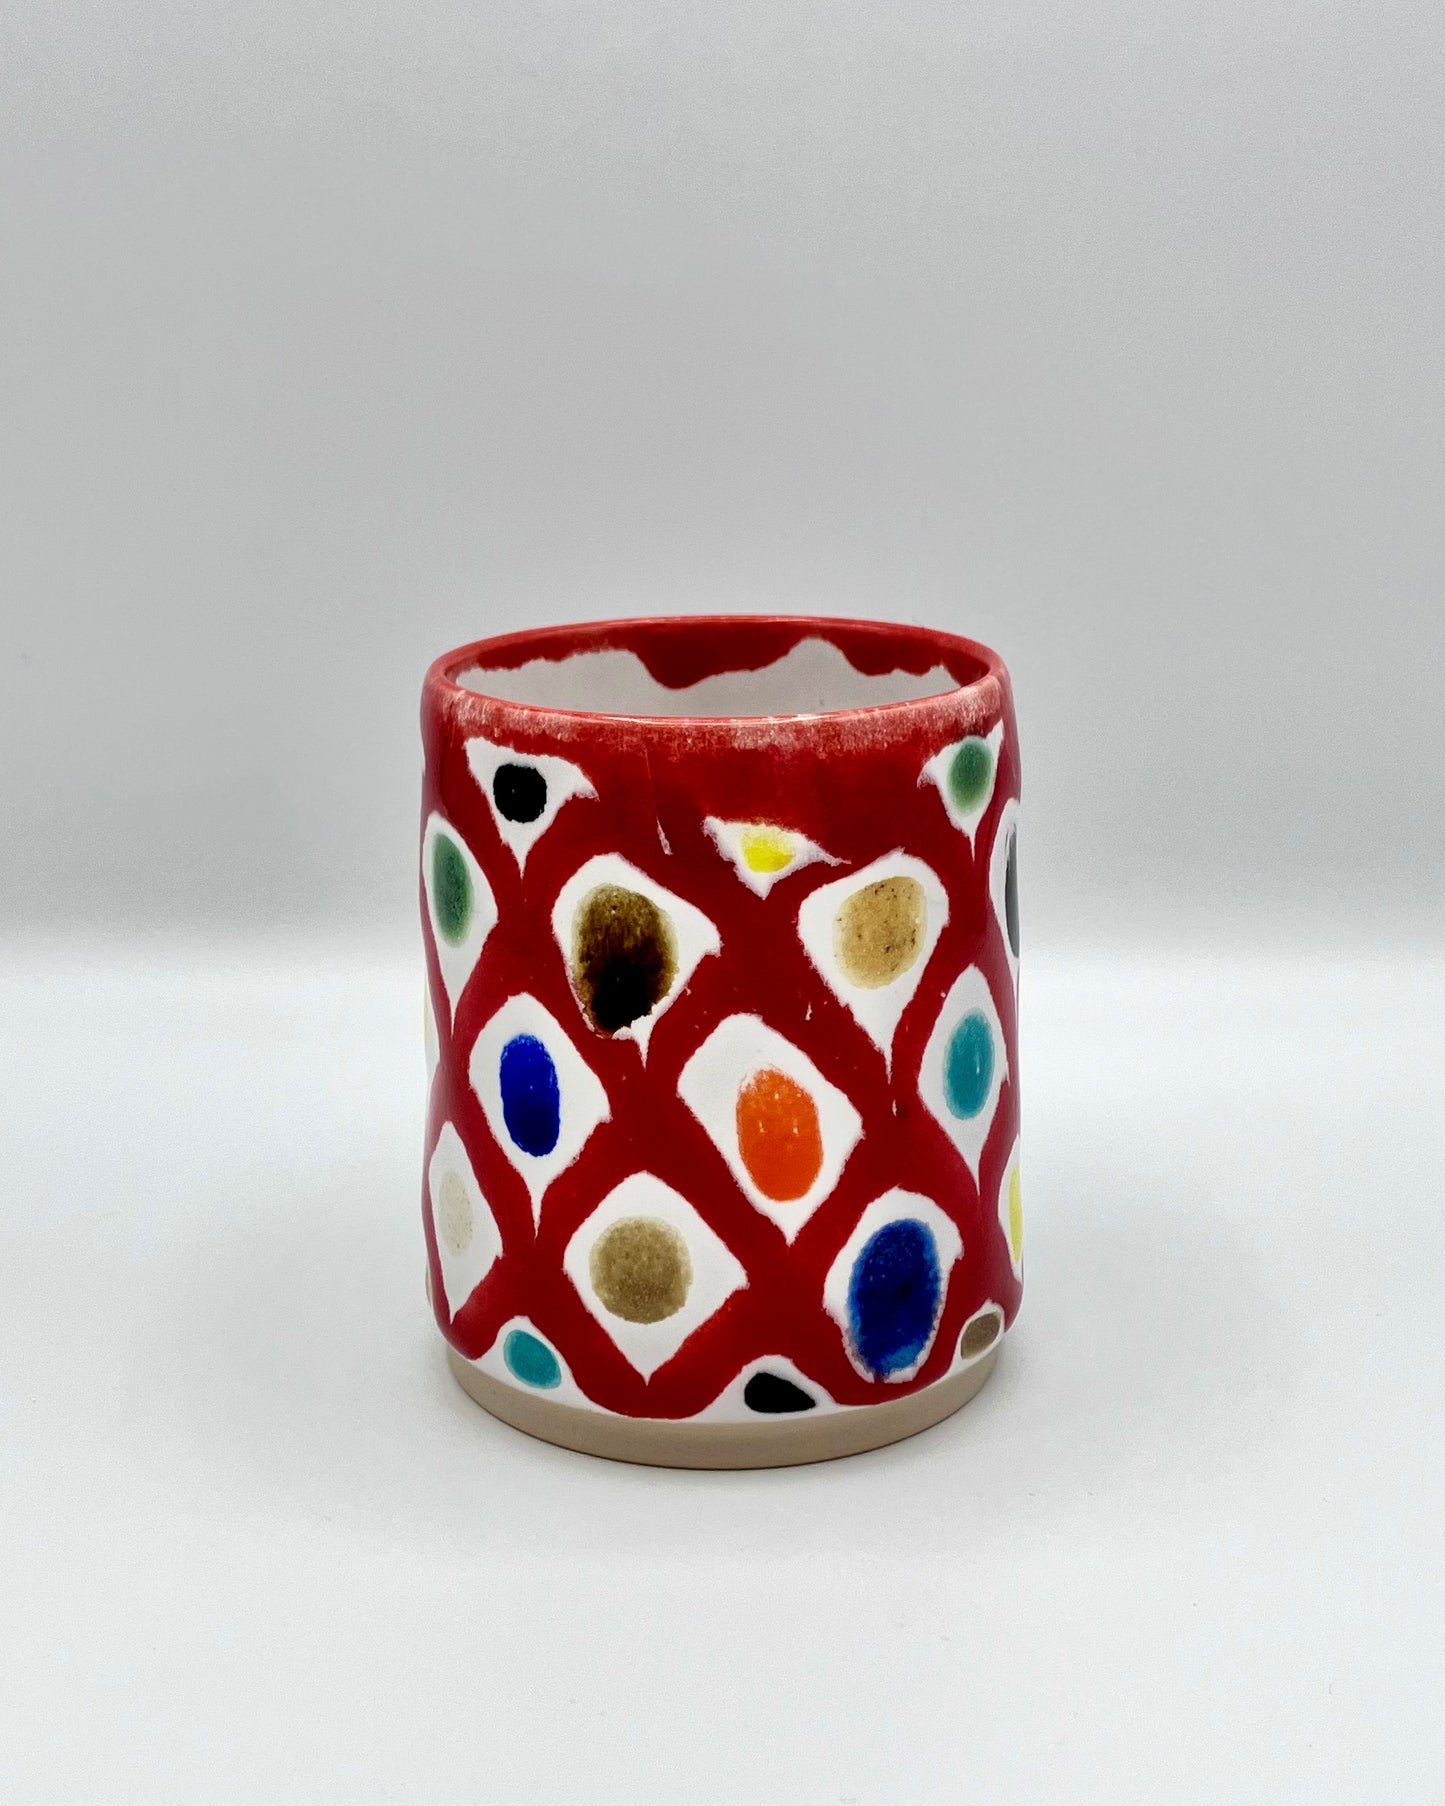 Murano lattice cup